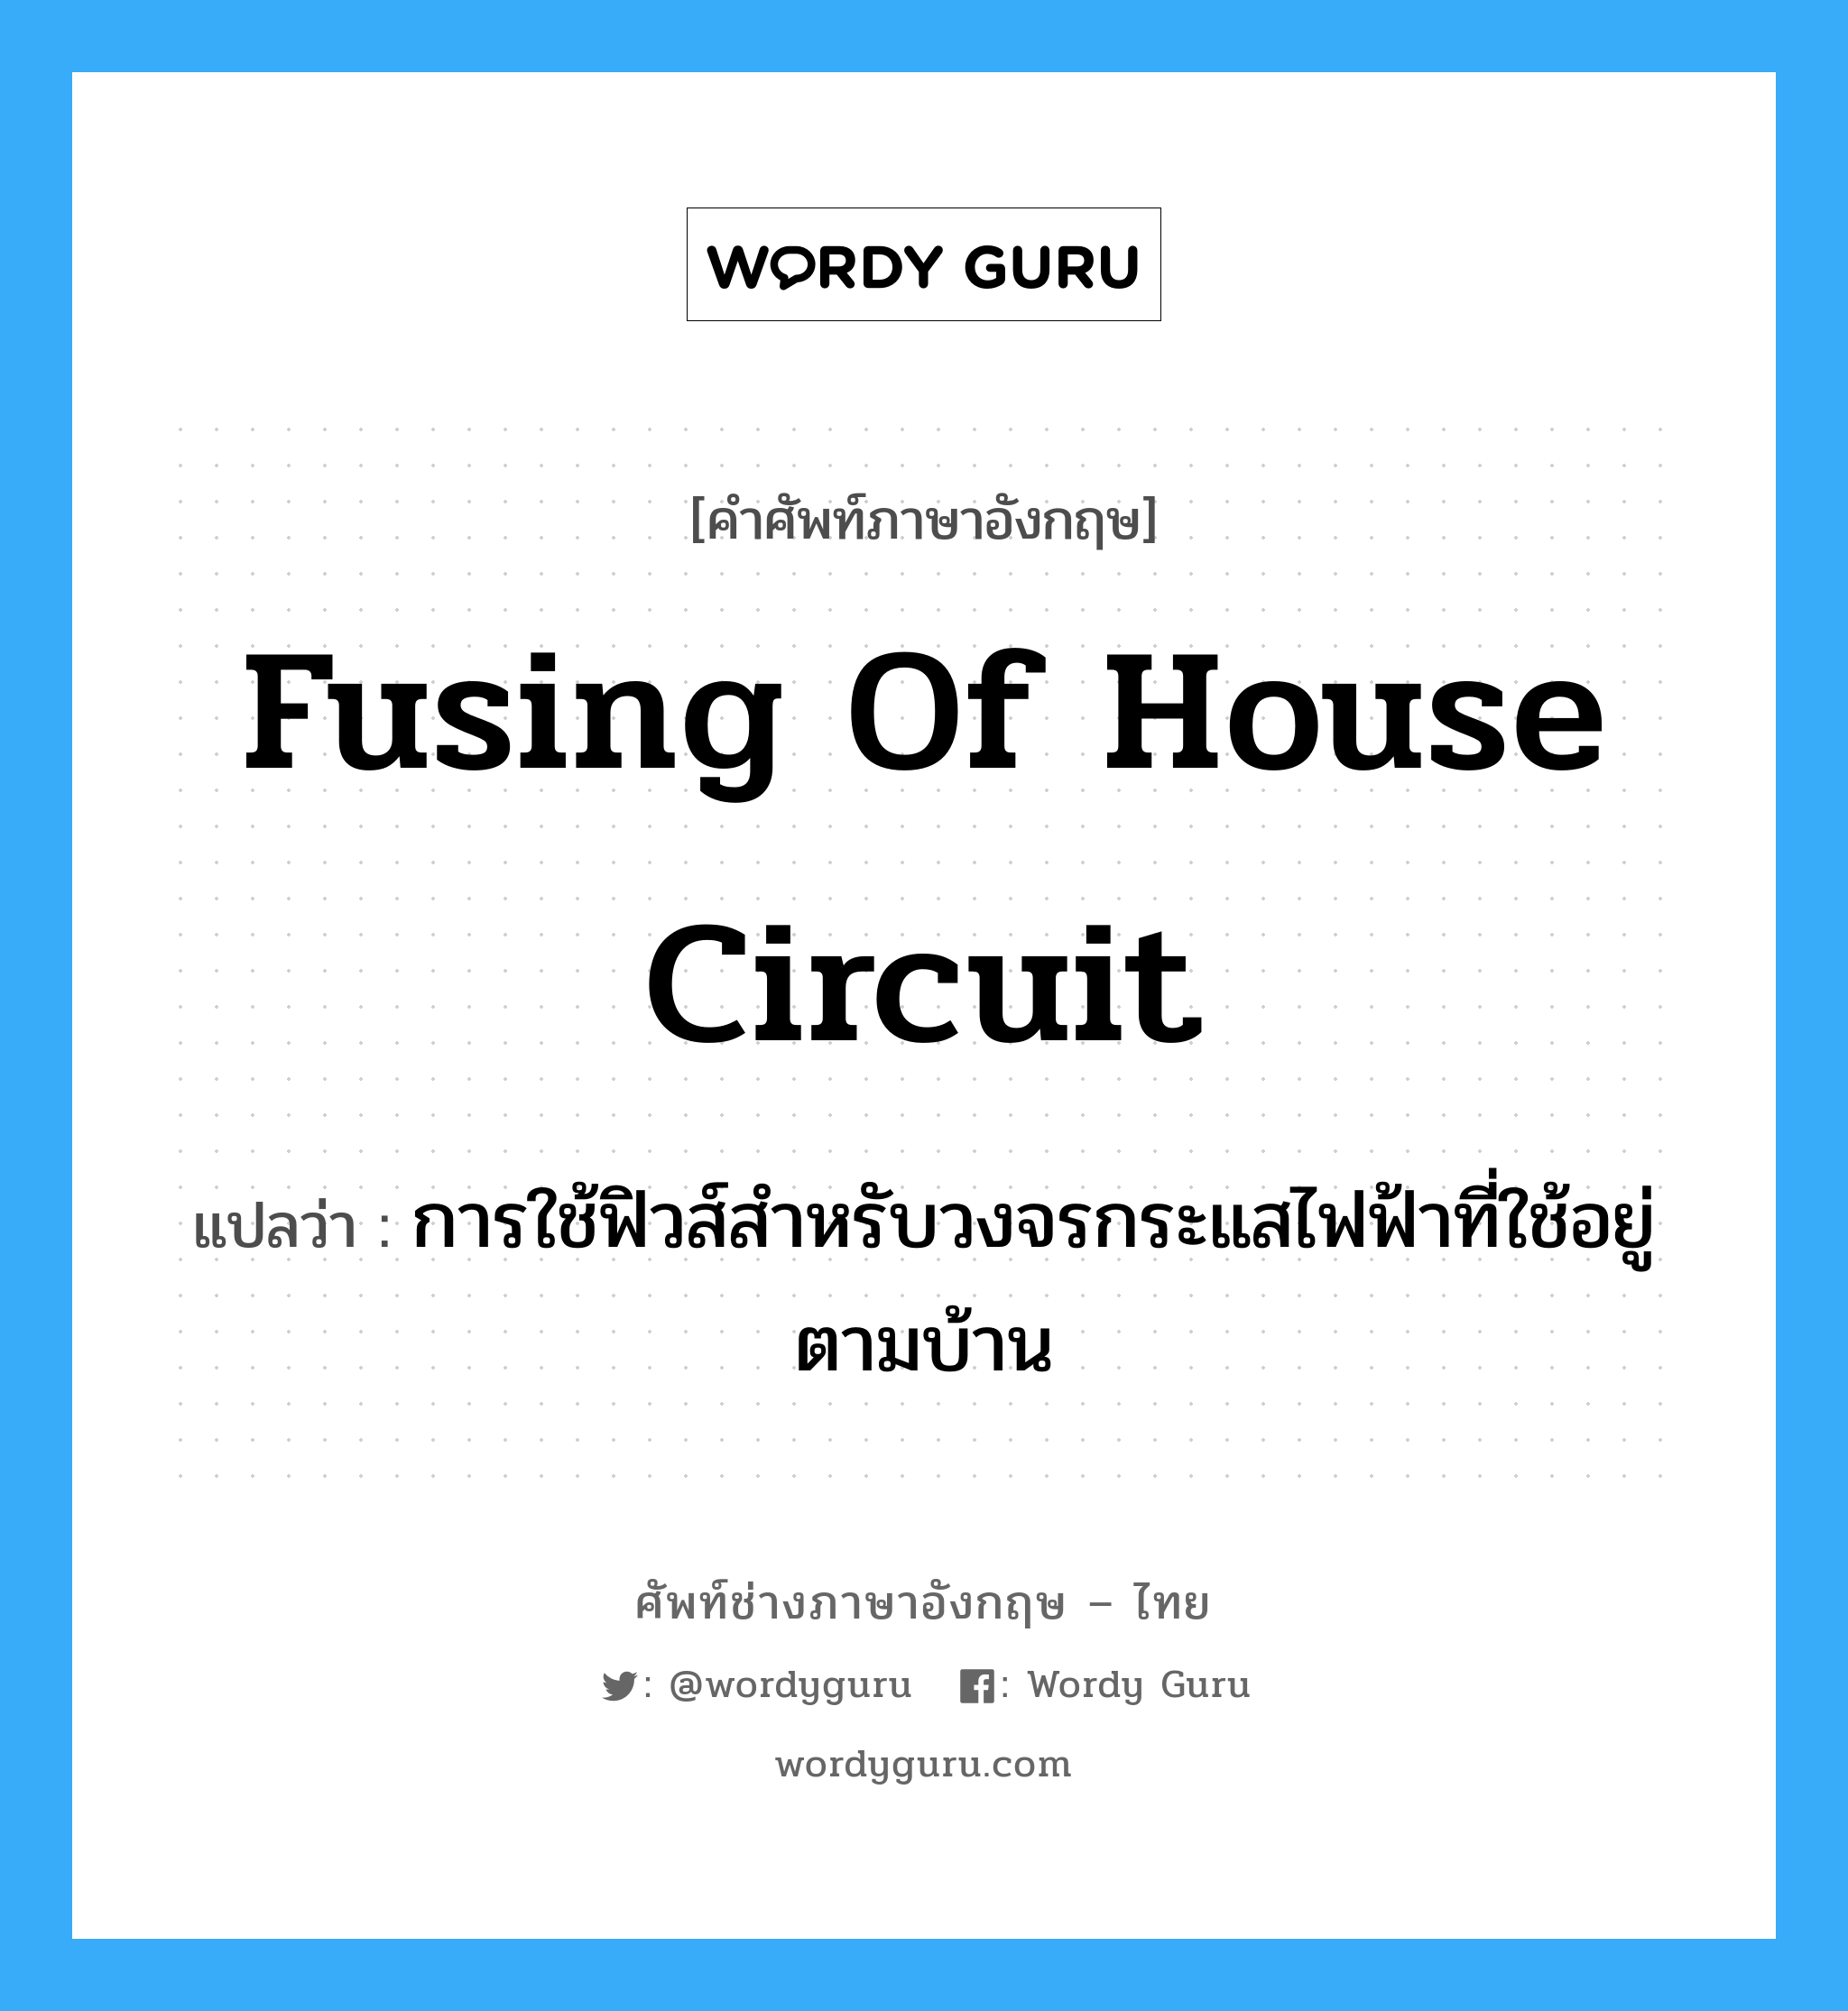 fusing of house circuit แปลว่า?, คำศัพท์ช่างภาษาอังกฤษ - ไทย fusing of house circuit คำศัพท์ภาษาอังกฤษ fusing of house circuit แปลว่า การใช้ฟิวส์สำหรับวงจรกระแสไฟฟ้าที่ใช้อยู่ตามบ้าน